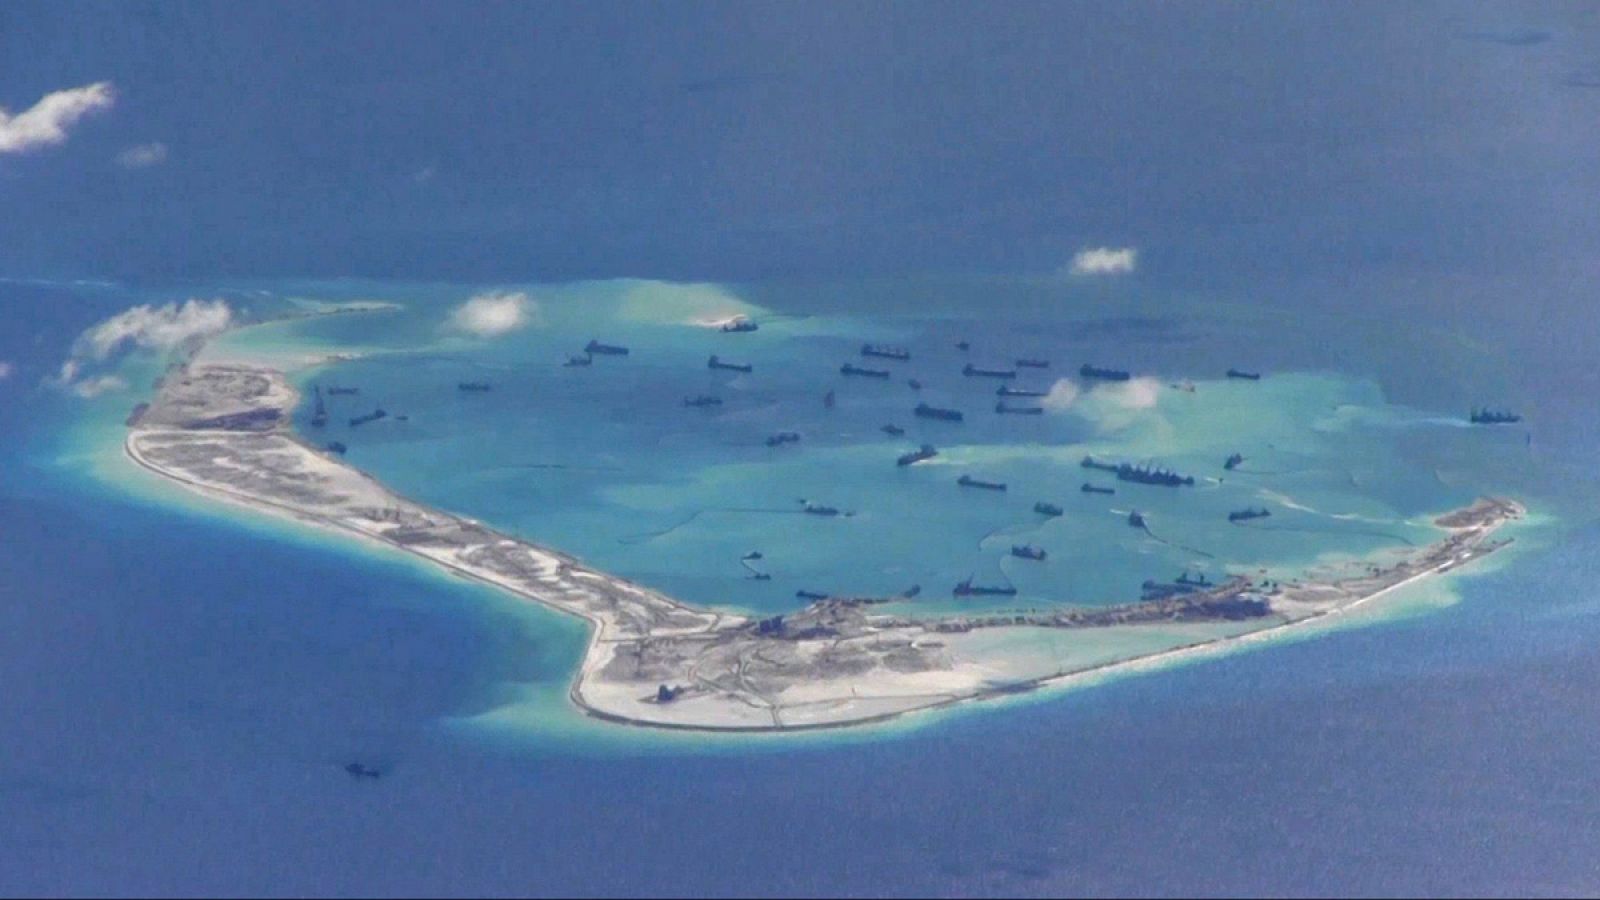 Las disputadas islas Spratly en el Mar de China Meridional